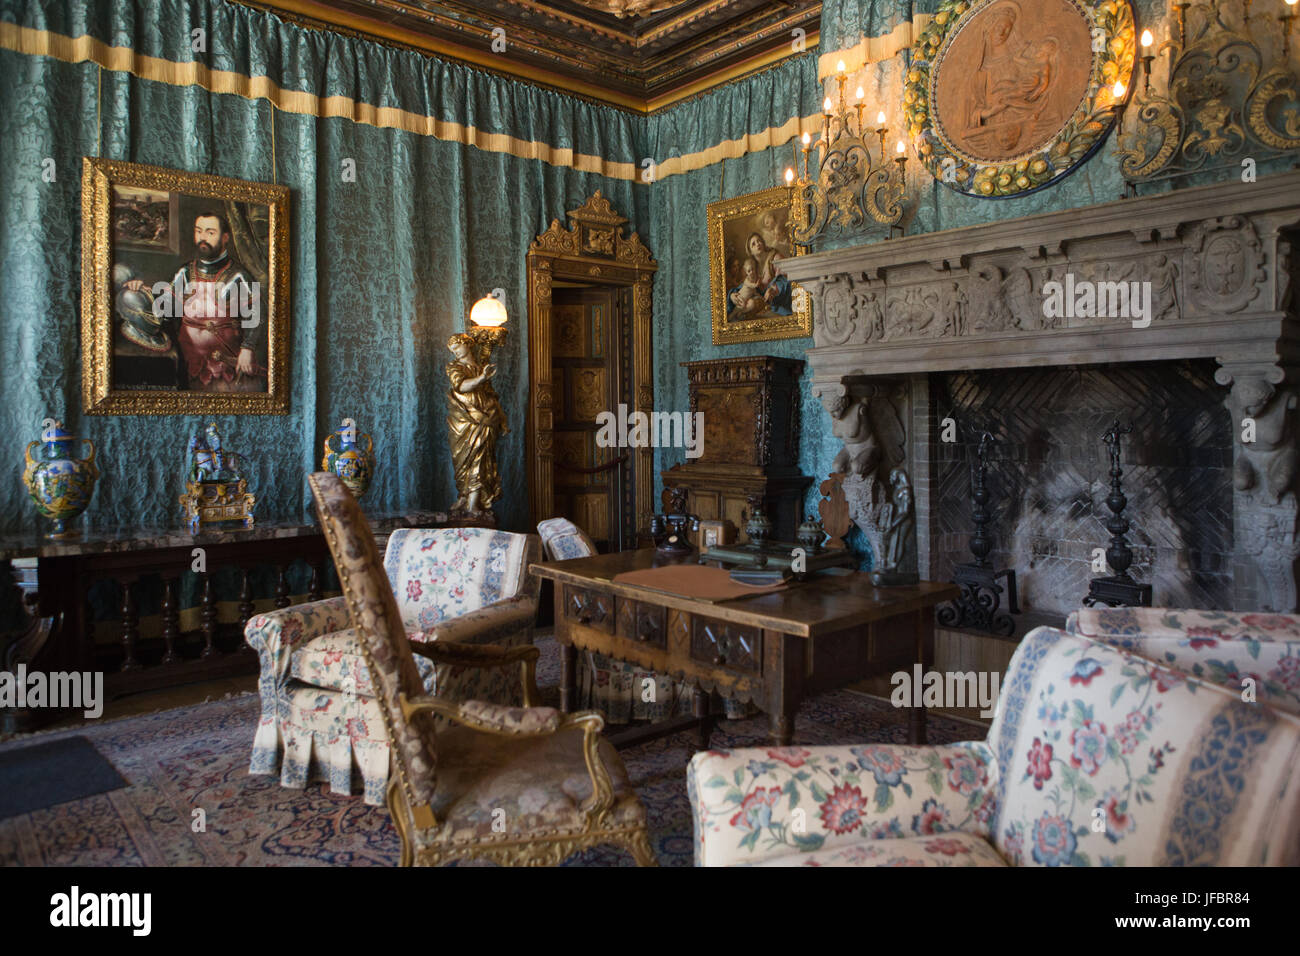 Un salotto con un caminetto, decorata con mobili, arazzi, artwork e ornati in apparecchi di illuminazione. Foto Stock